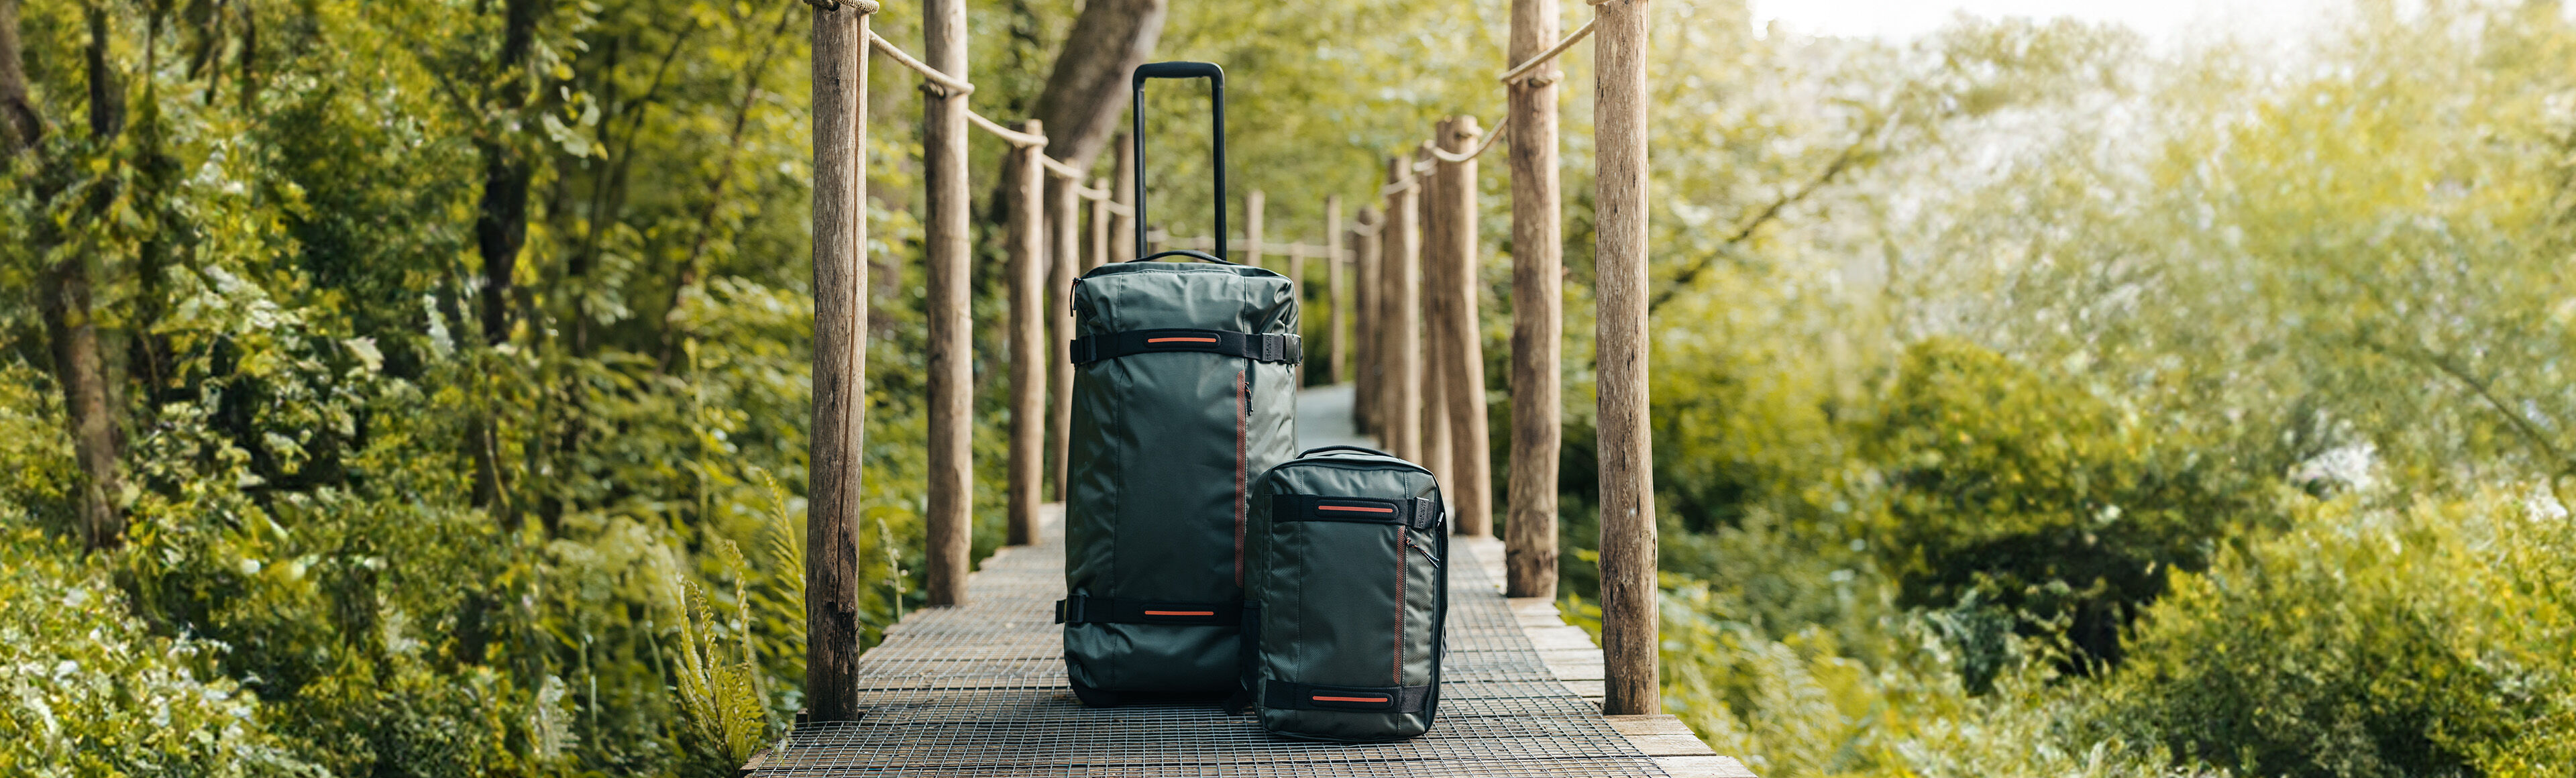 Recyclex™ resväskor och ryggsäckar